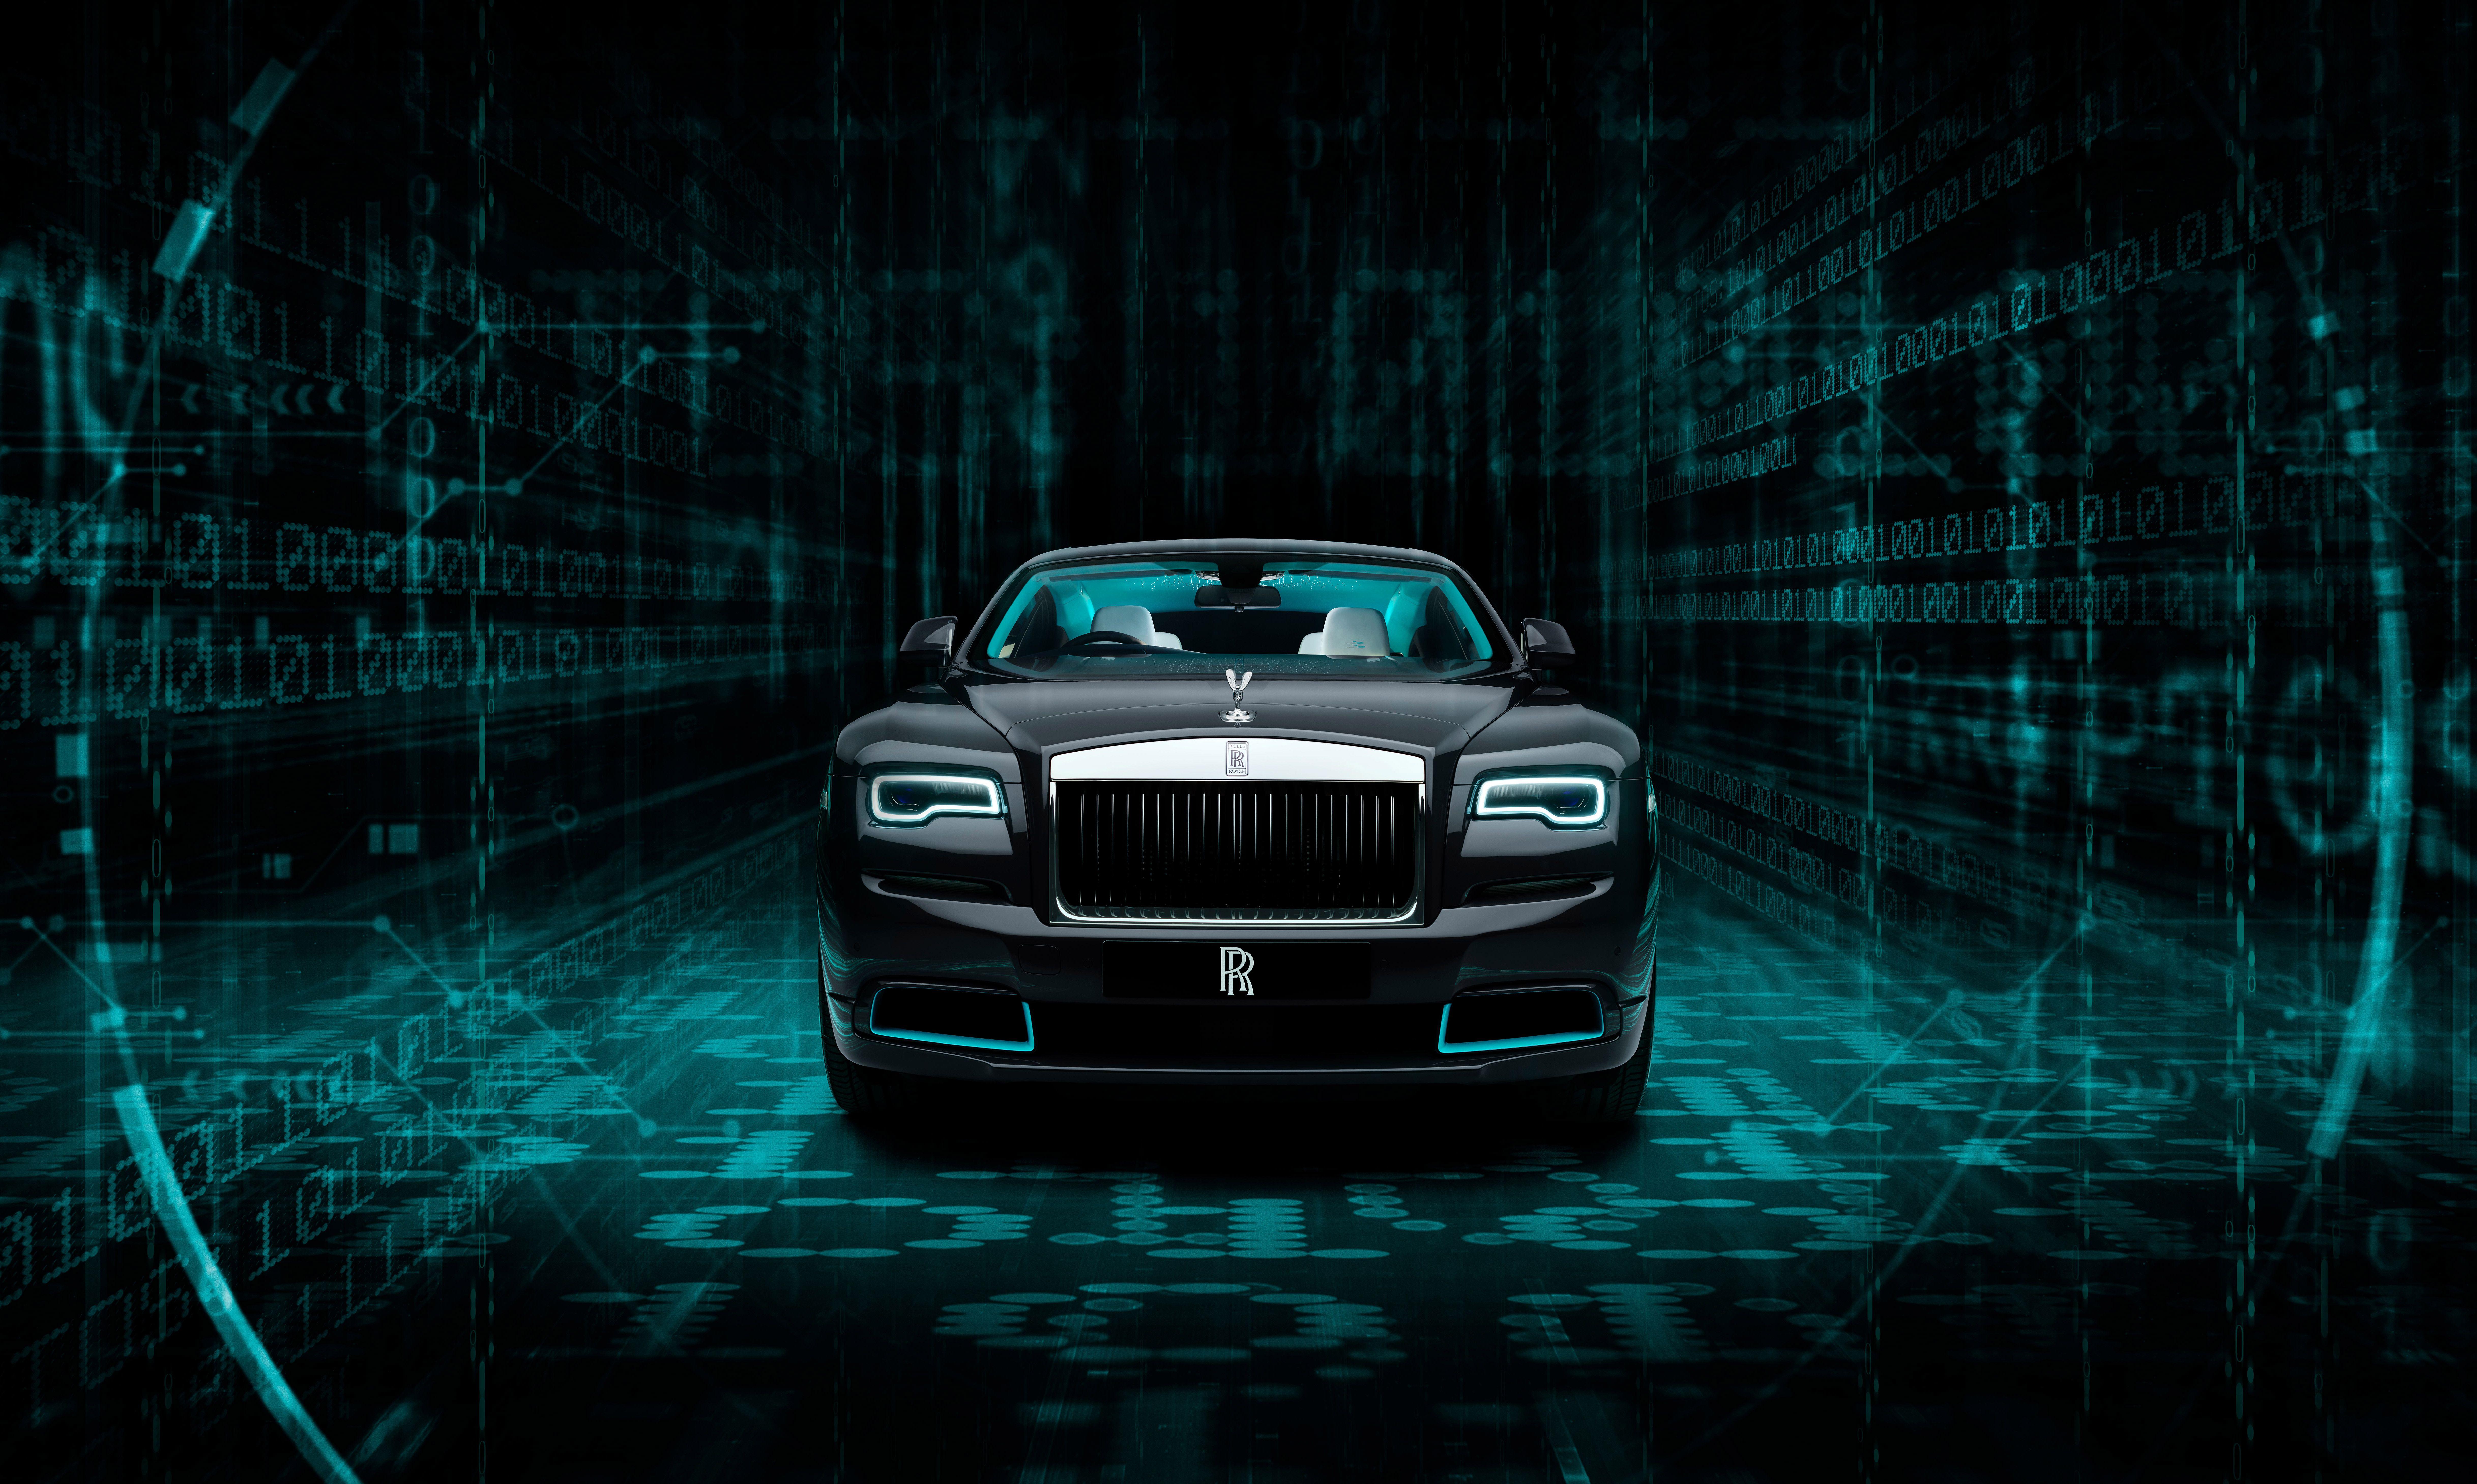 Rolls Royce Desktop Wallpapers Top Free Rolls Royce Desktop Backgrounds Wallpaperaccess